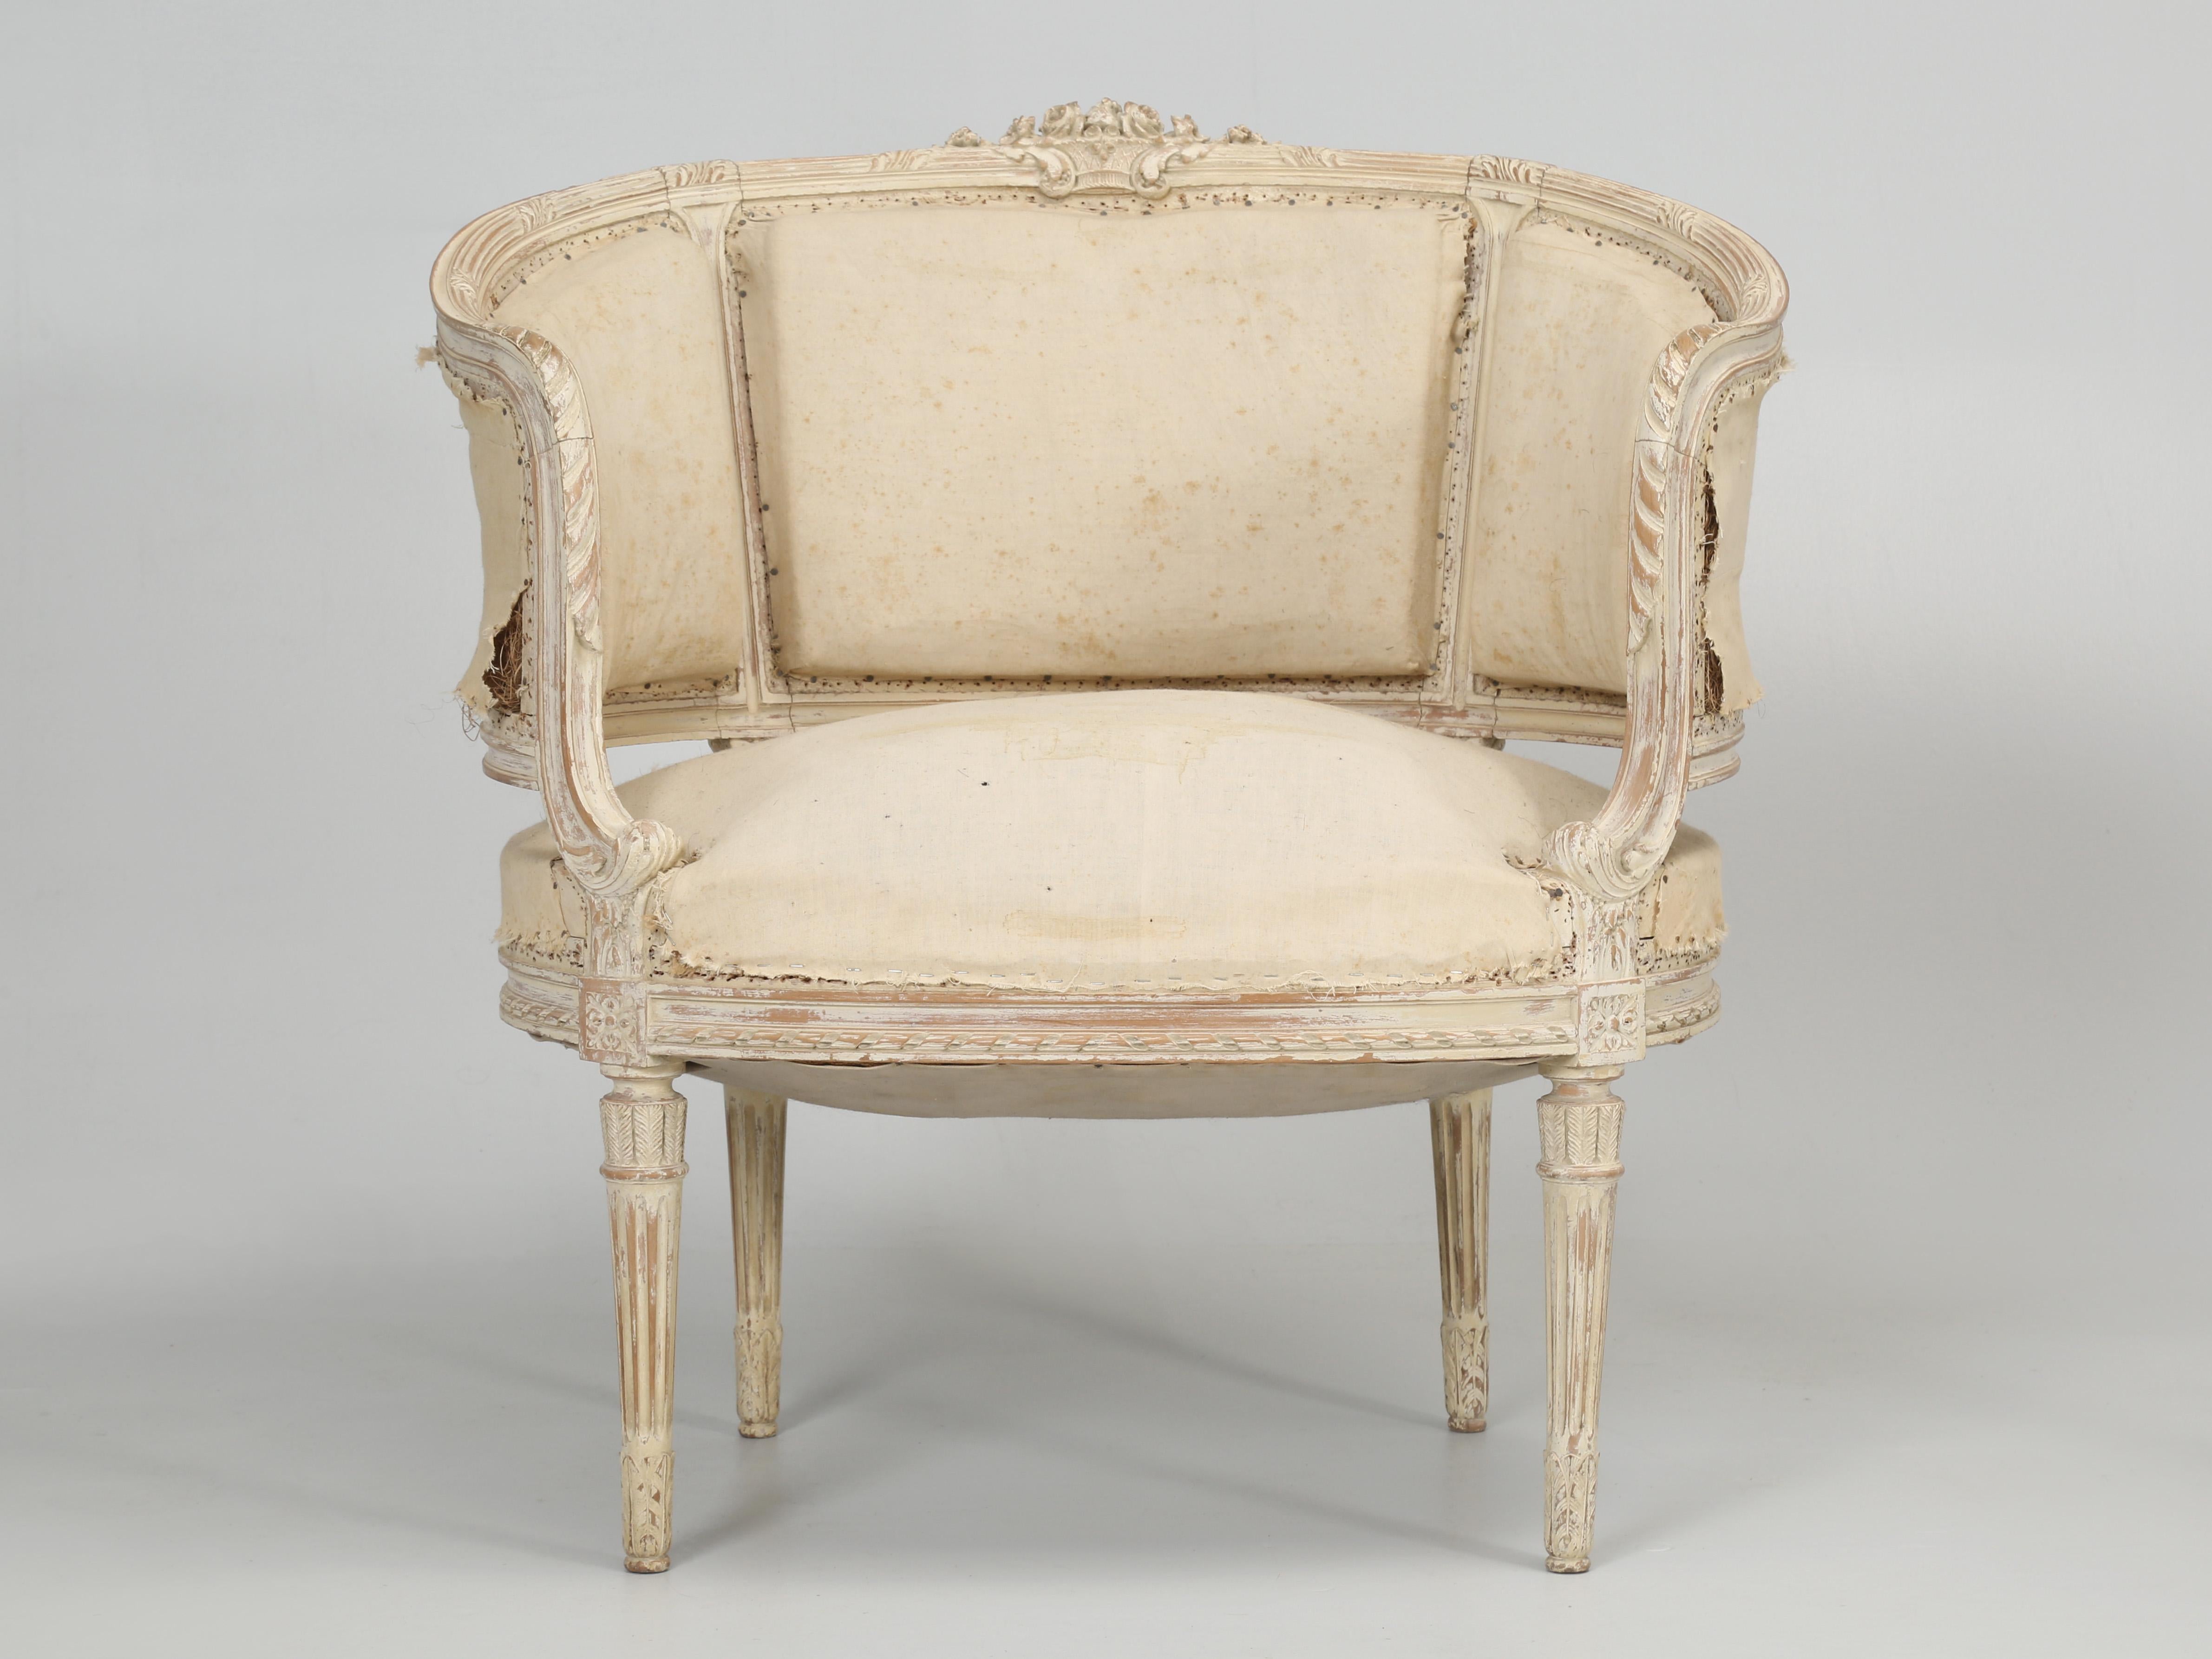 Antikes Paar schwedische Bergère-Stühle im Louis XVI-Stil in alter Farbe, ein Bergère-Stuhl ist definiert als: ein gepolsterter Sessel im Stil des 18. Jahrhunderts mit einem freiliegenden Holzrahmen. Dieses besondere Paar antiker, bemalter